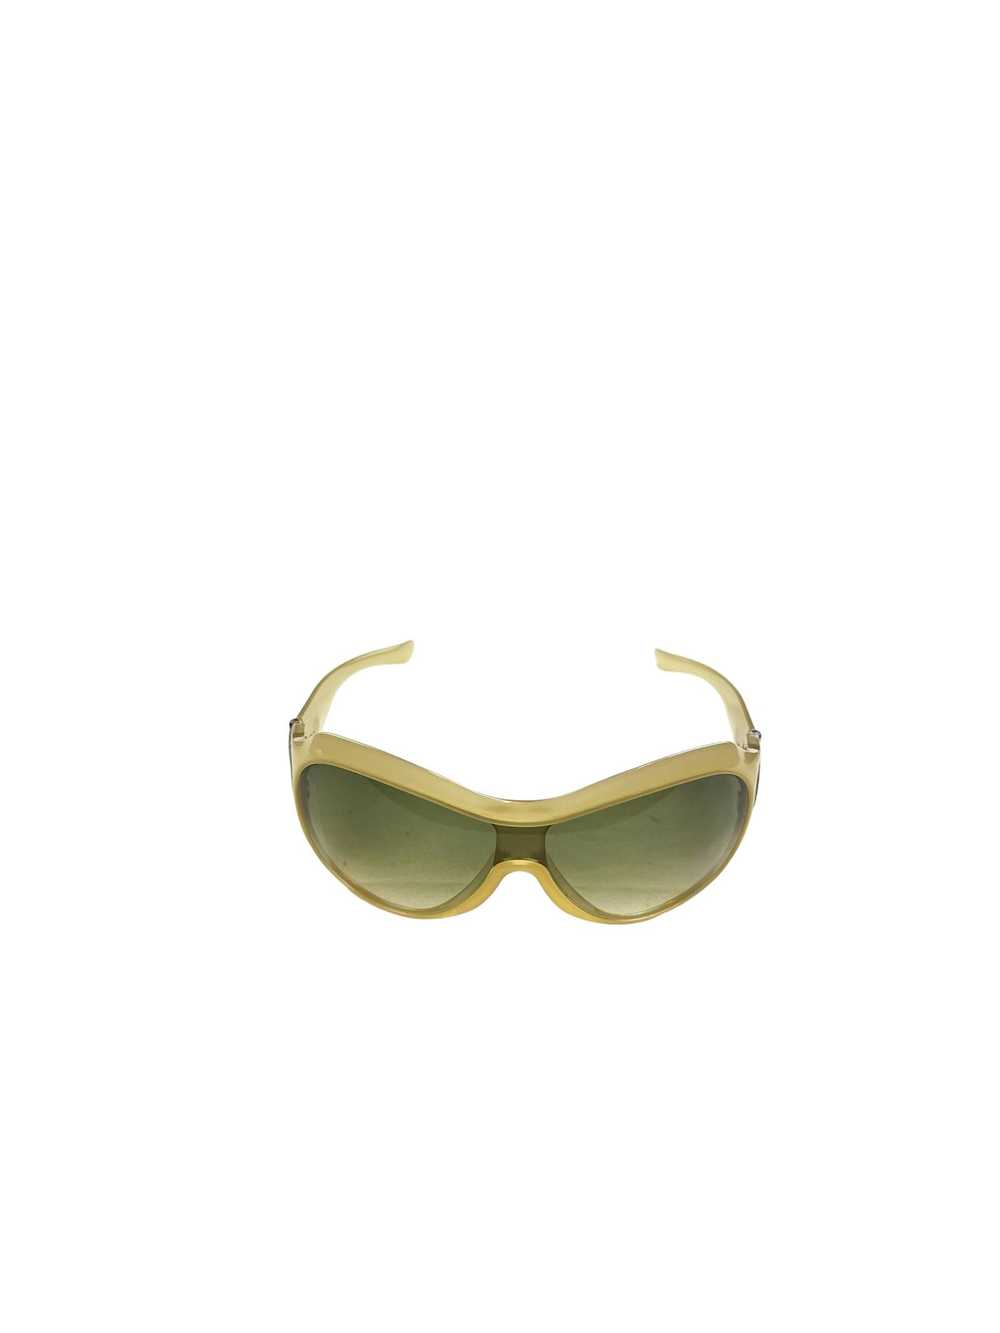 Gucci Gucci mask sunglasses - image 3